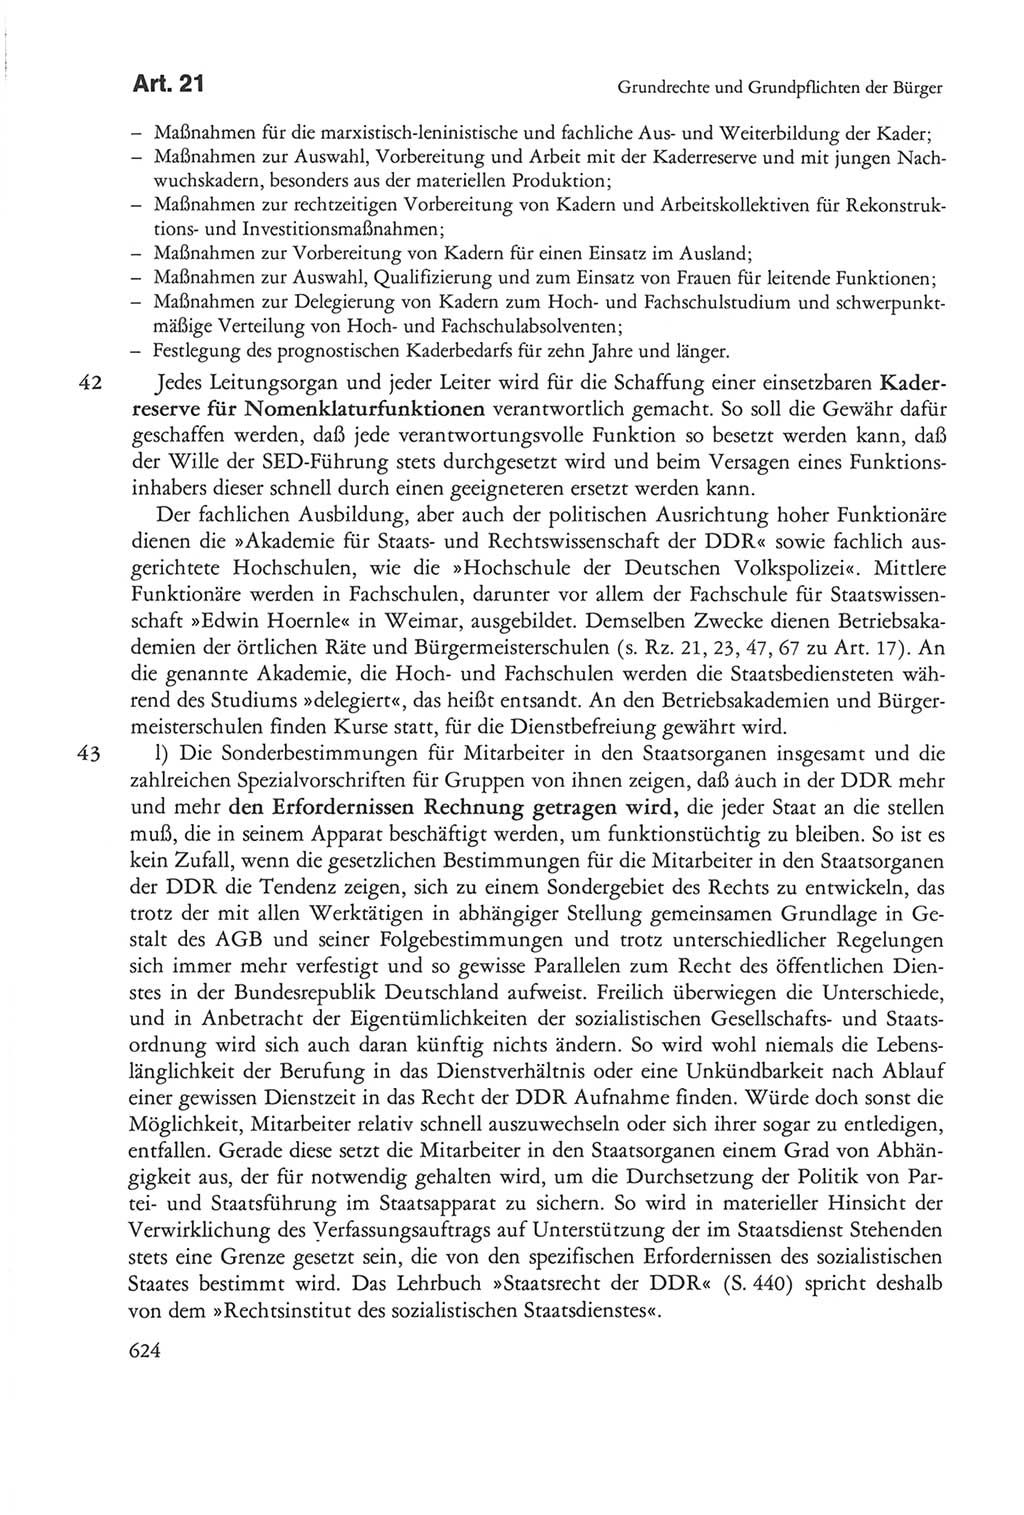 Die sozialistische Verfassung der Deutschen Demokratischen Republik (DDR), Kommentar mit einem Nachtrag 1997, Seite 624 (Soz. Verf. DDR Komm. Nachtr. 1997, S. 624)